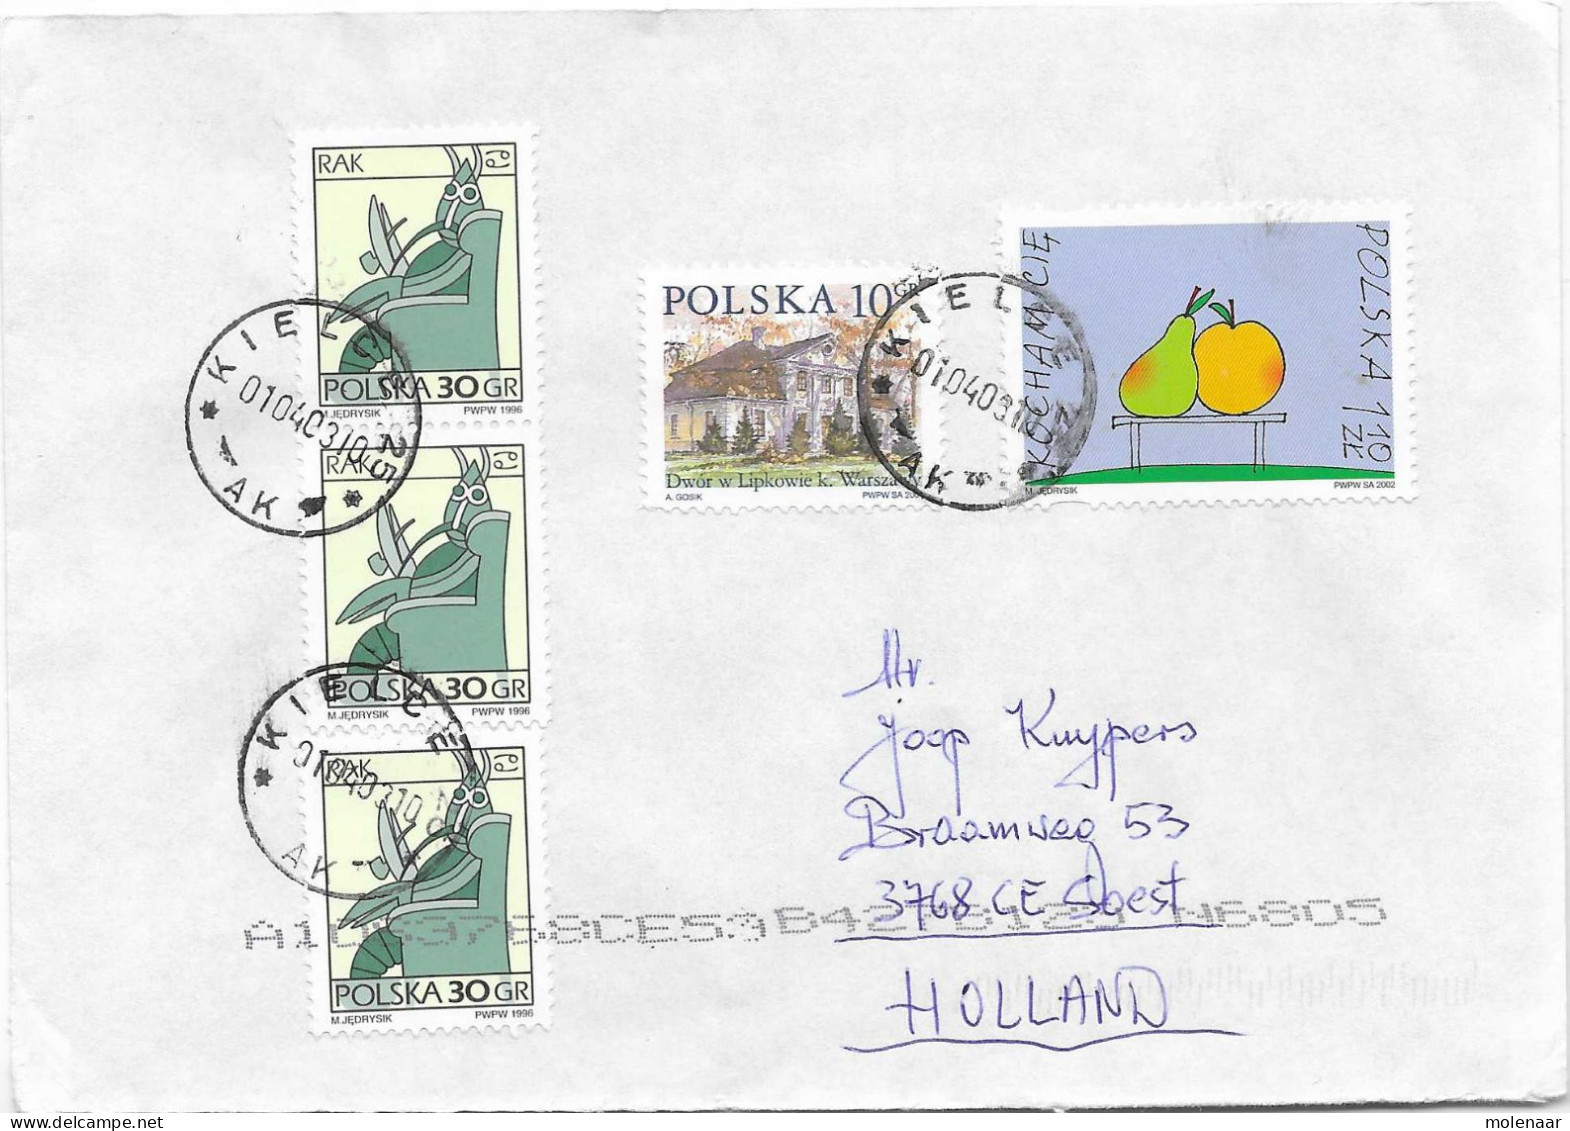 Postzegels > Europa > Polen > 1944-.... Republiek > 2001-10 > Brief Uit 2002 Met 5 Postzegels (17131) - Briefe U. Dokumente